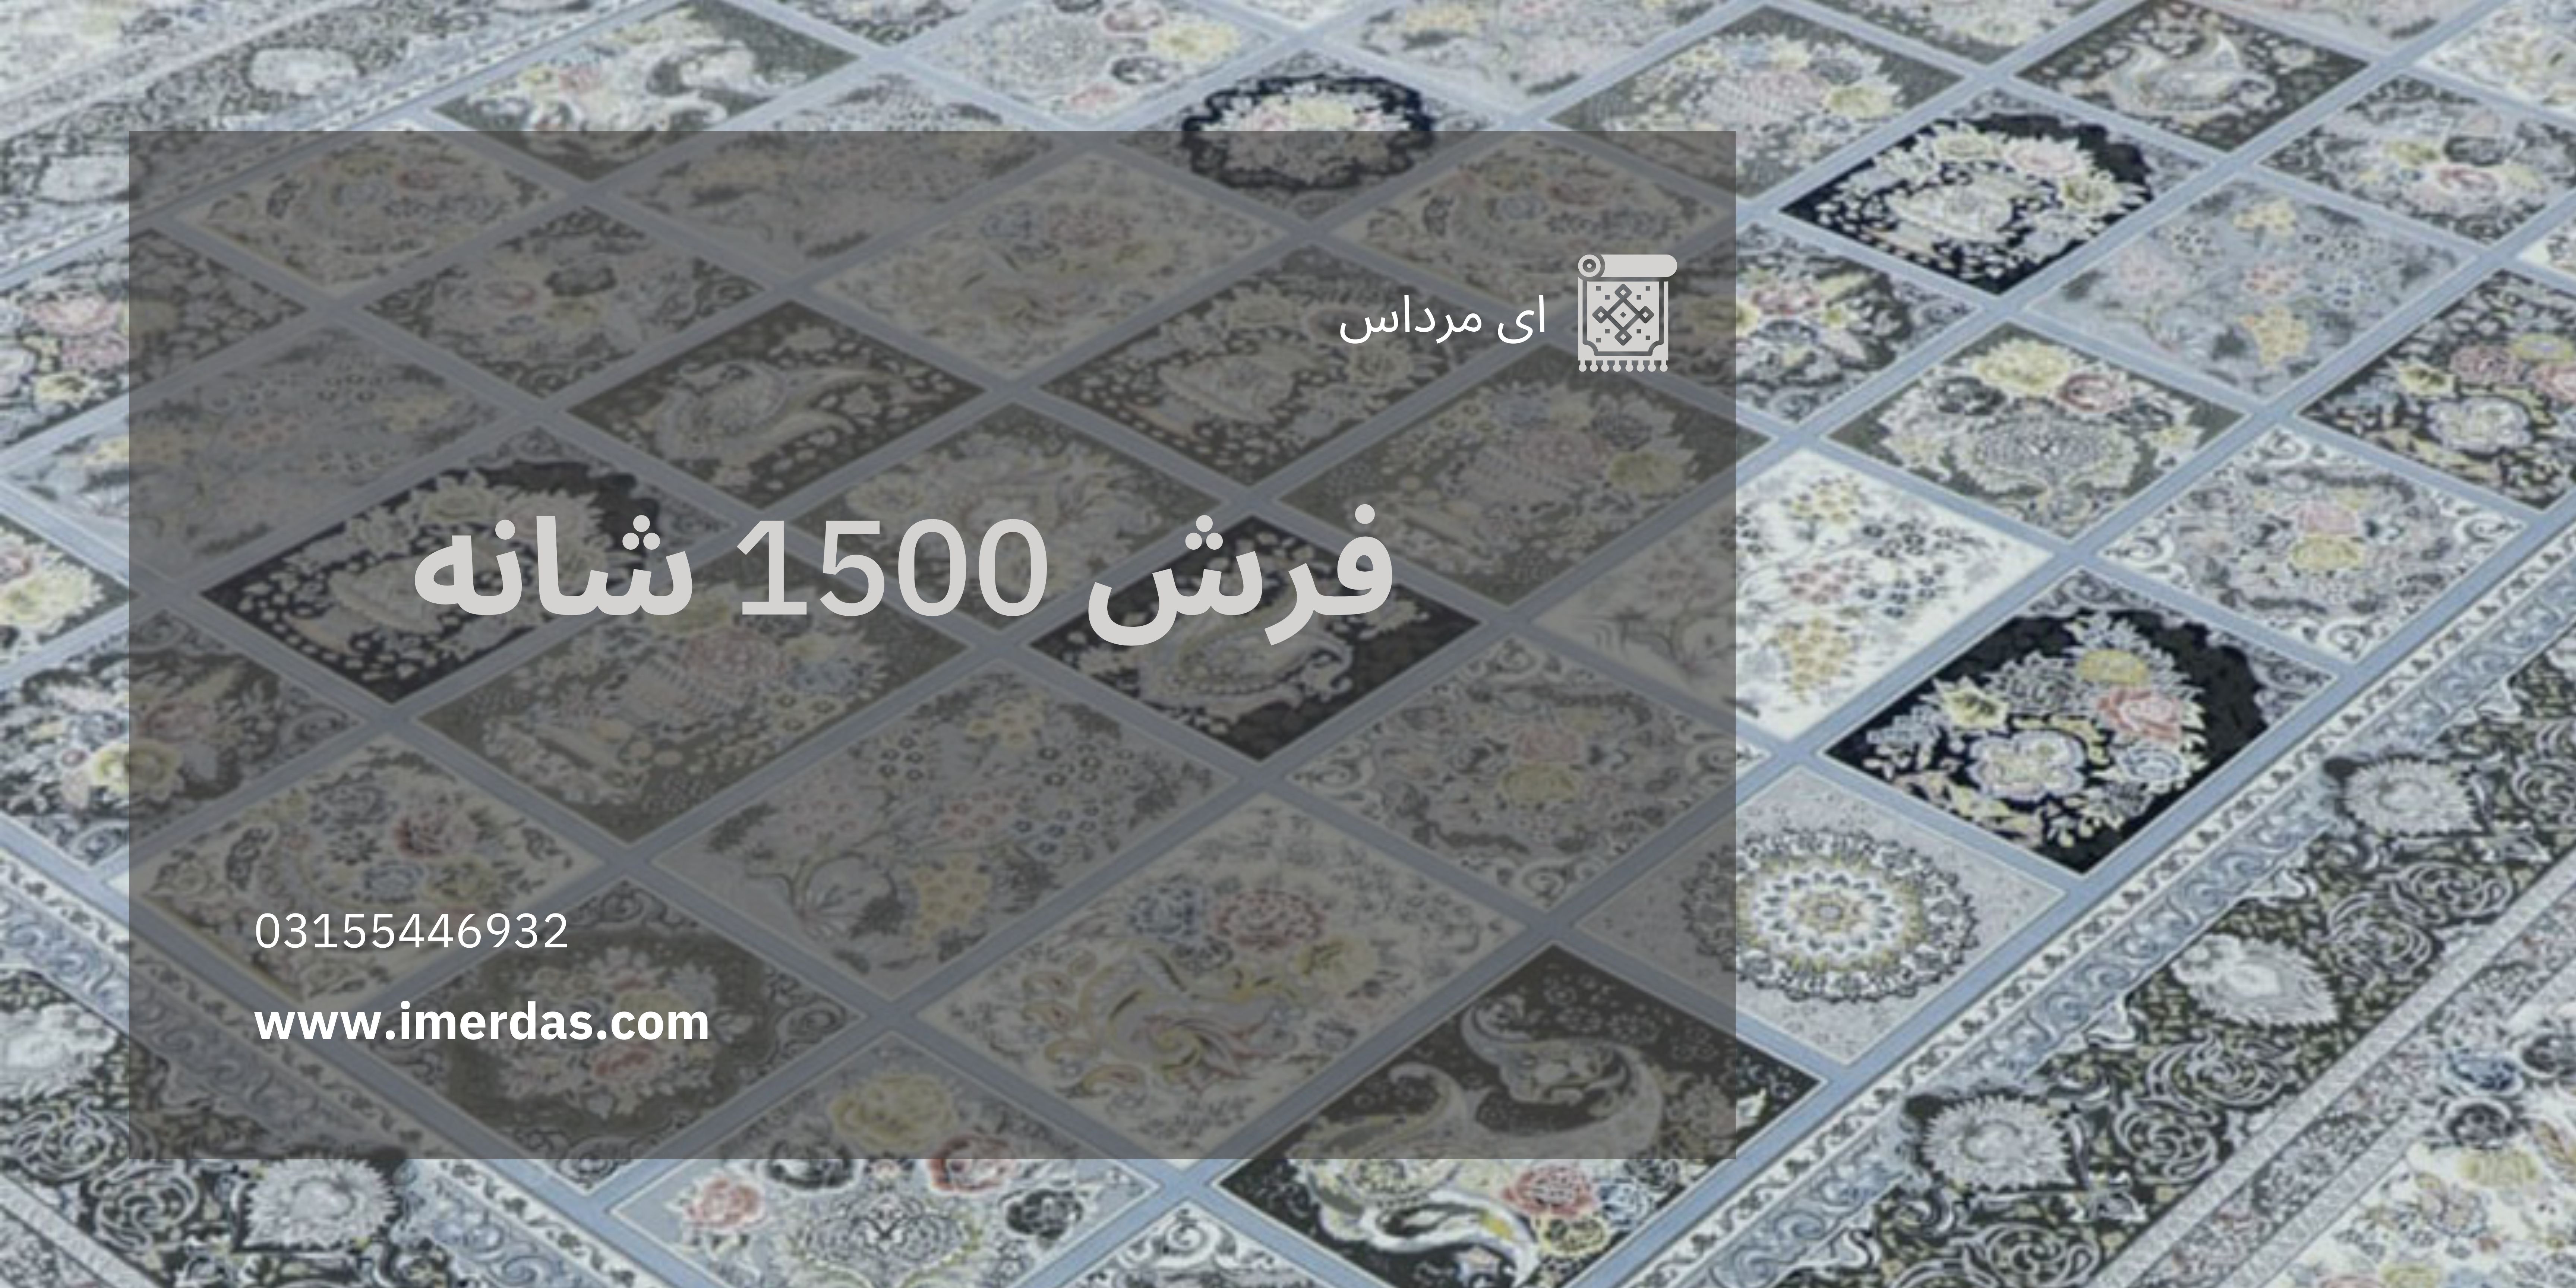 فرش 1500 شانه - imerdas.com